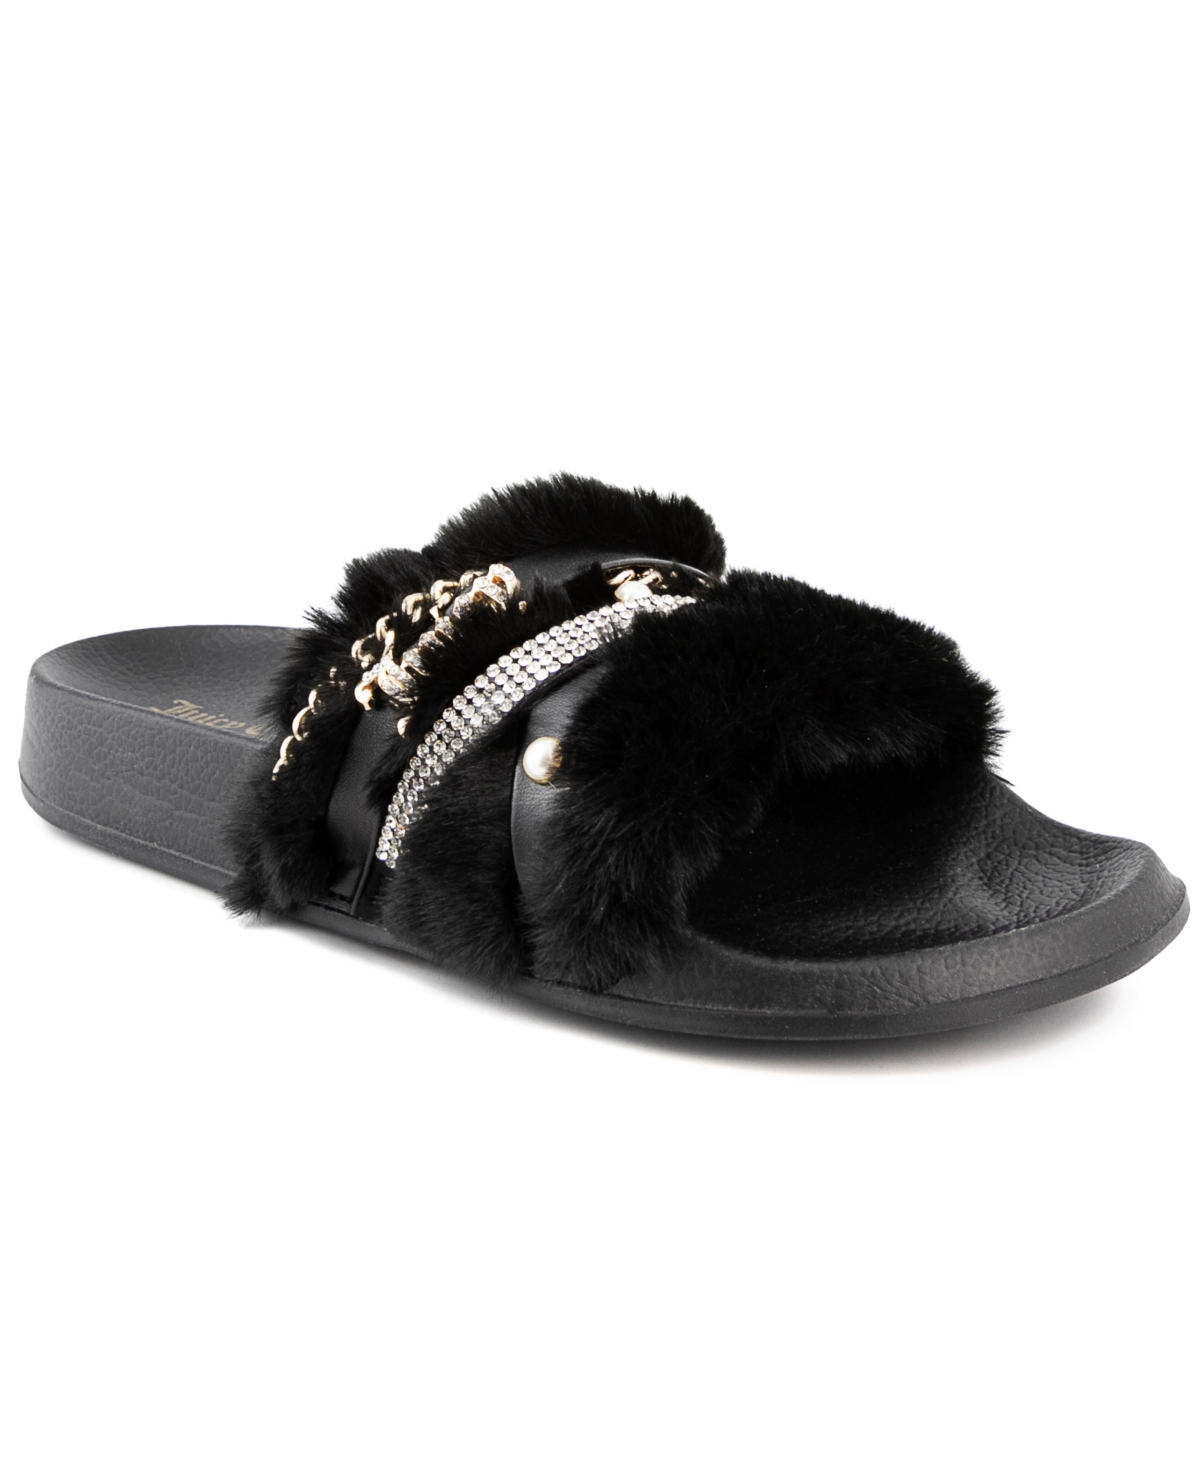 Women's Styx Faux Fur Slide Sandals - Black